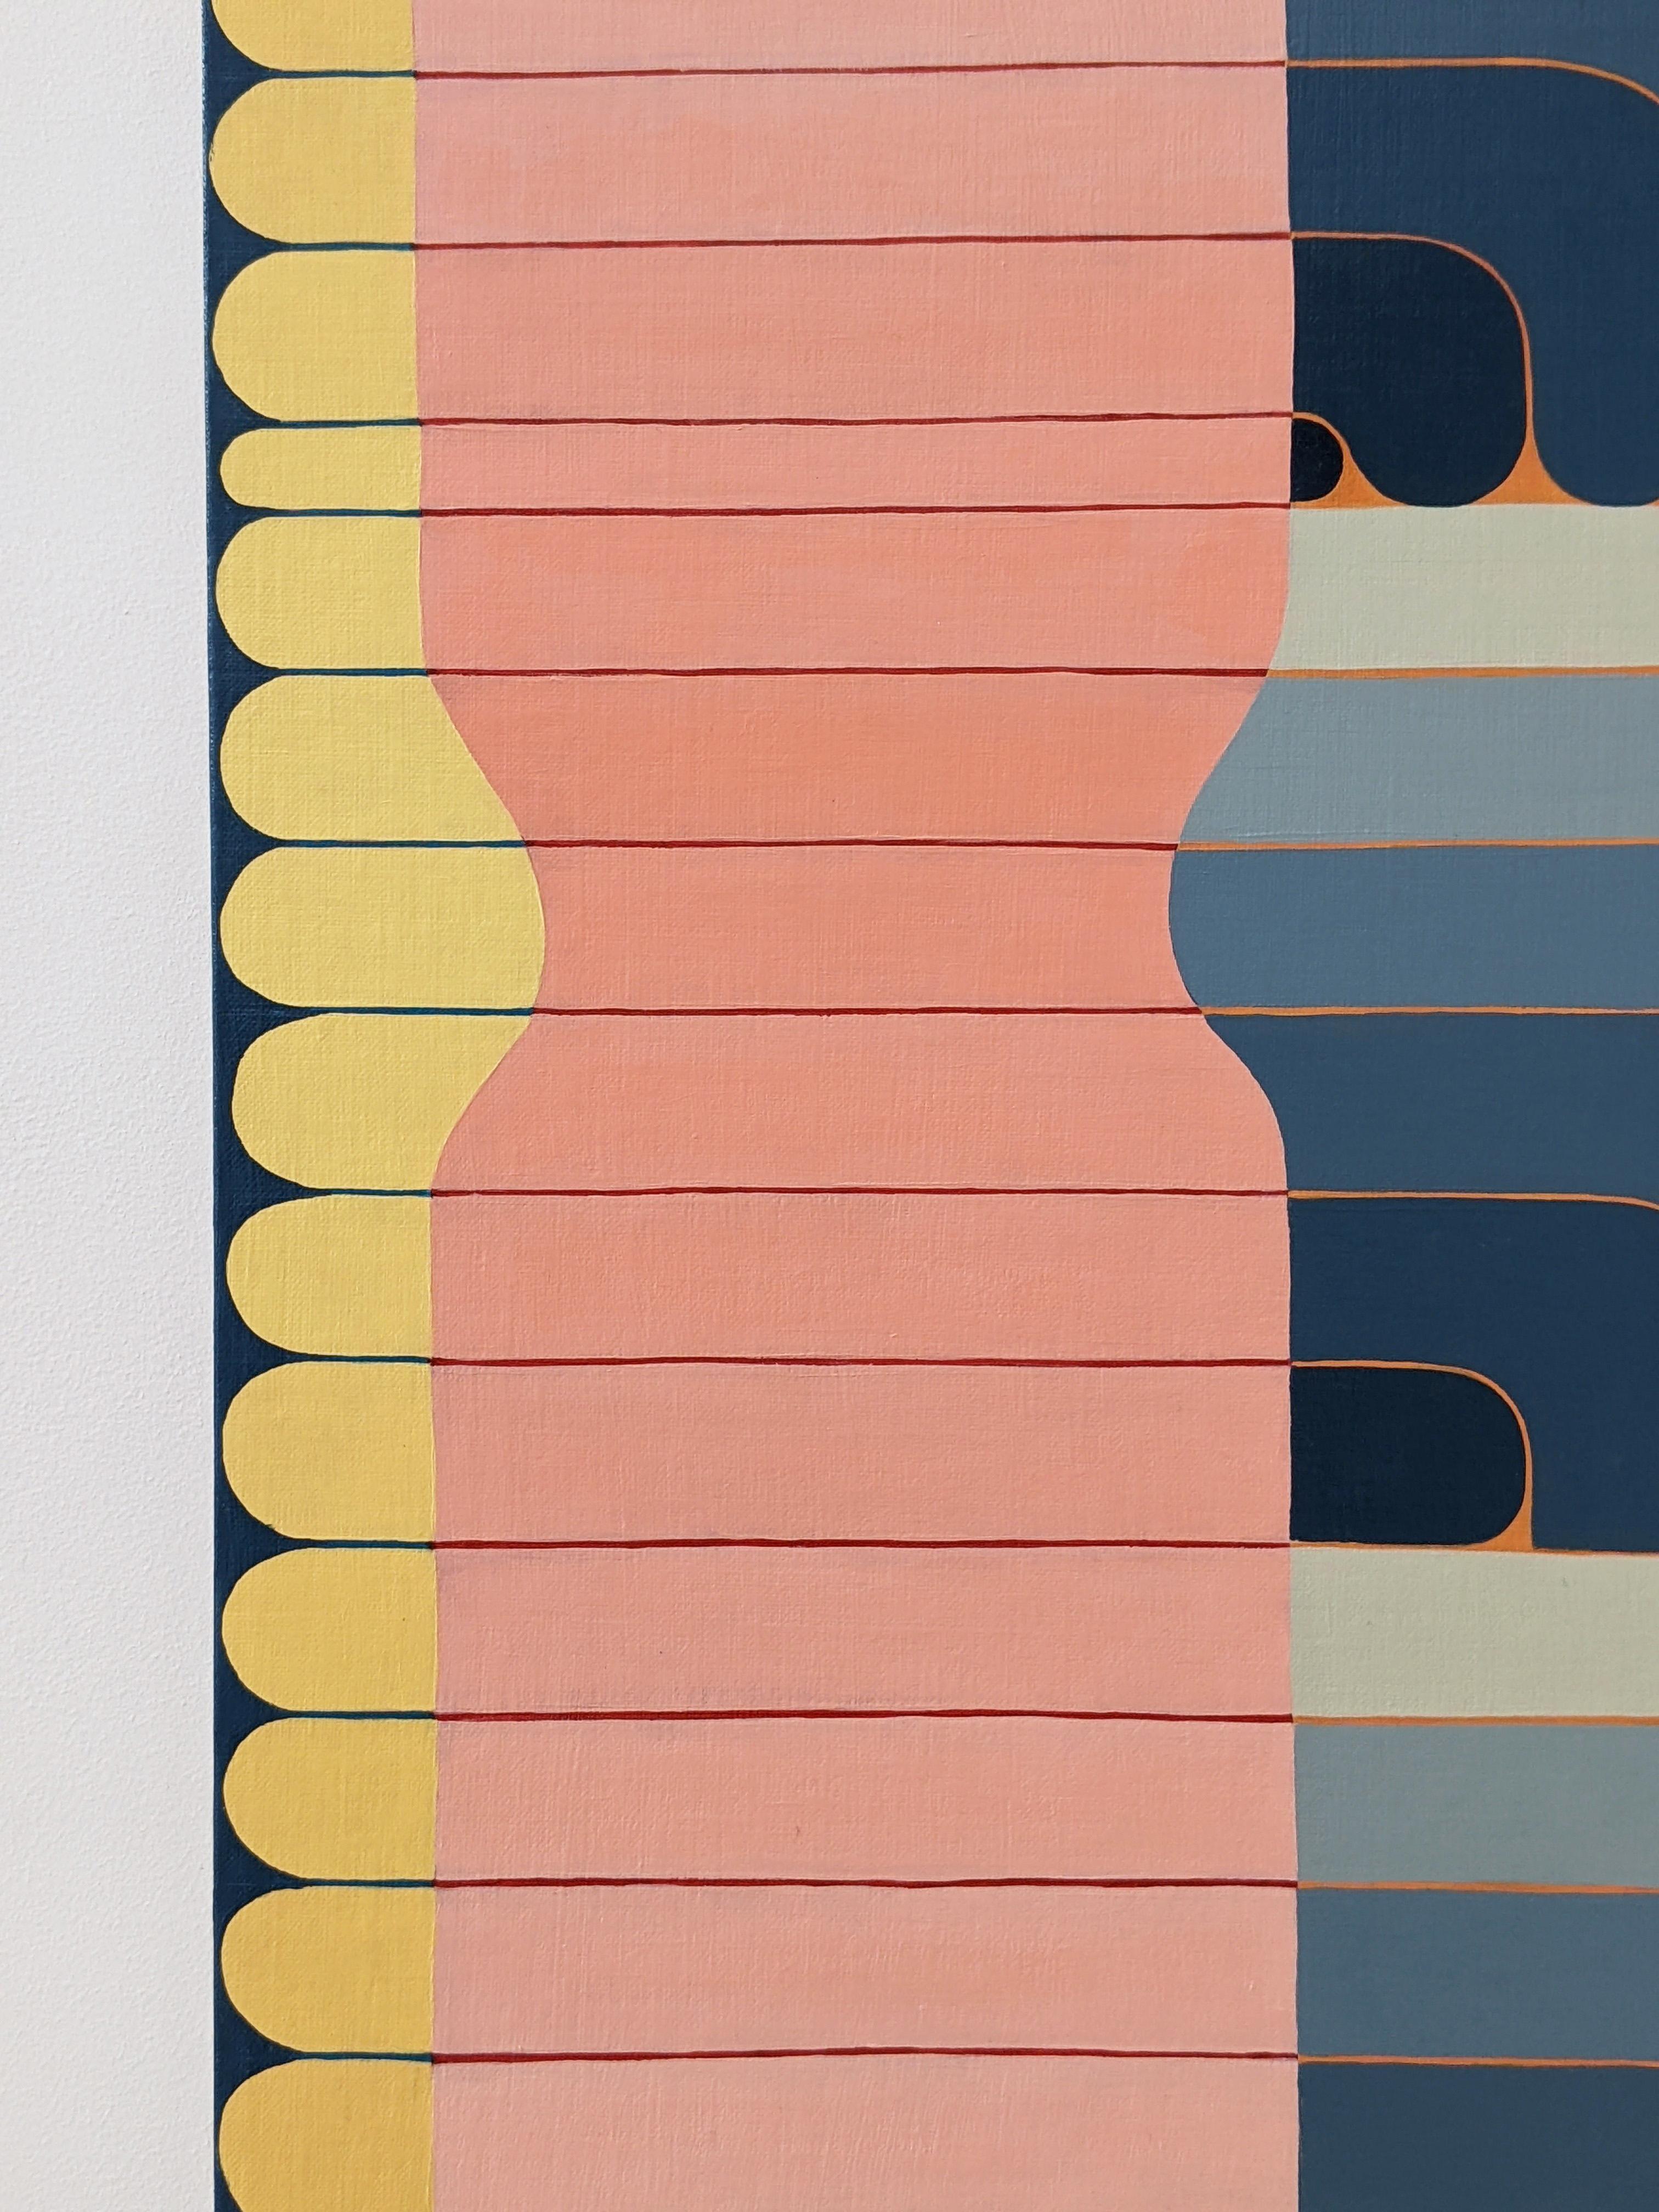 Des formes géométriques composent un motif de lignes épaisses incurvées vers le bas au centre dans des tons de bleu gris à indigo, encadrées par des colonnes incurvées rose pâle et corail rosé, lumineuses, avec des détails jaune d'or et bleu indigo